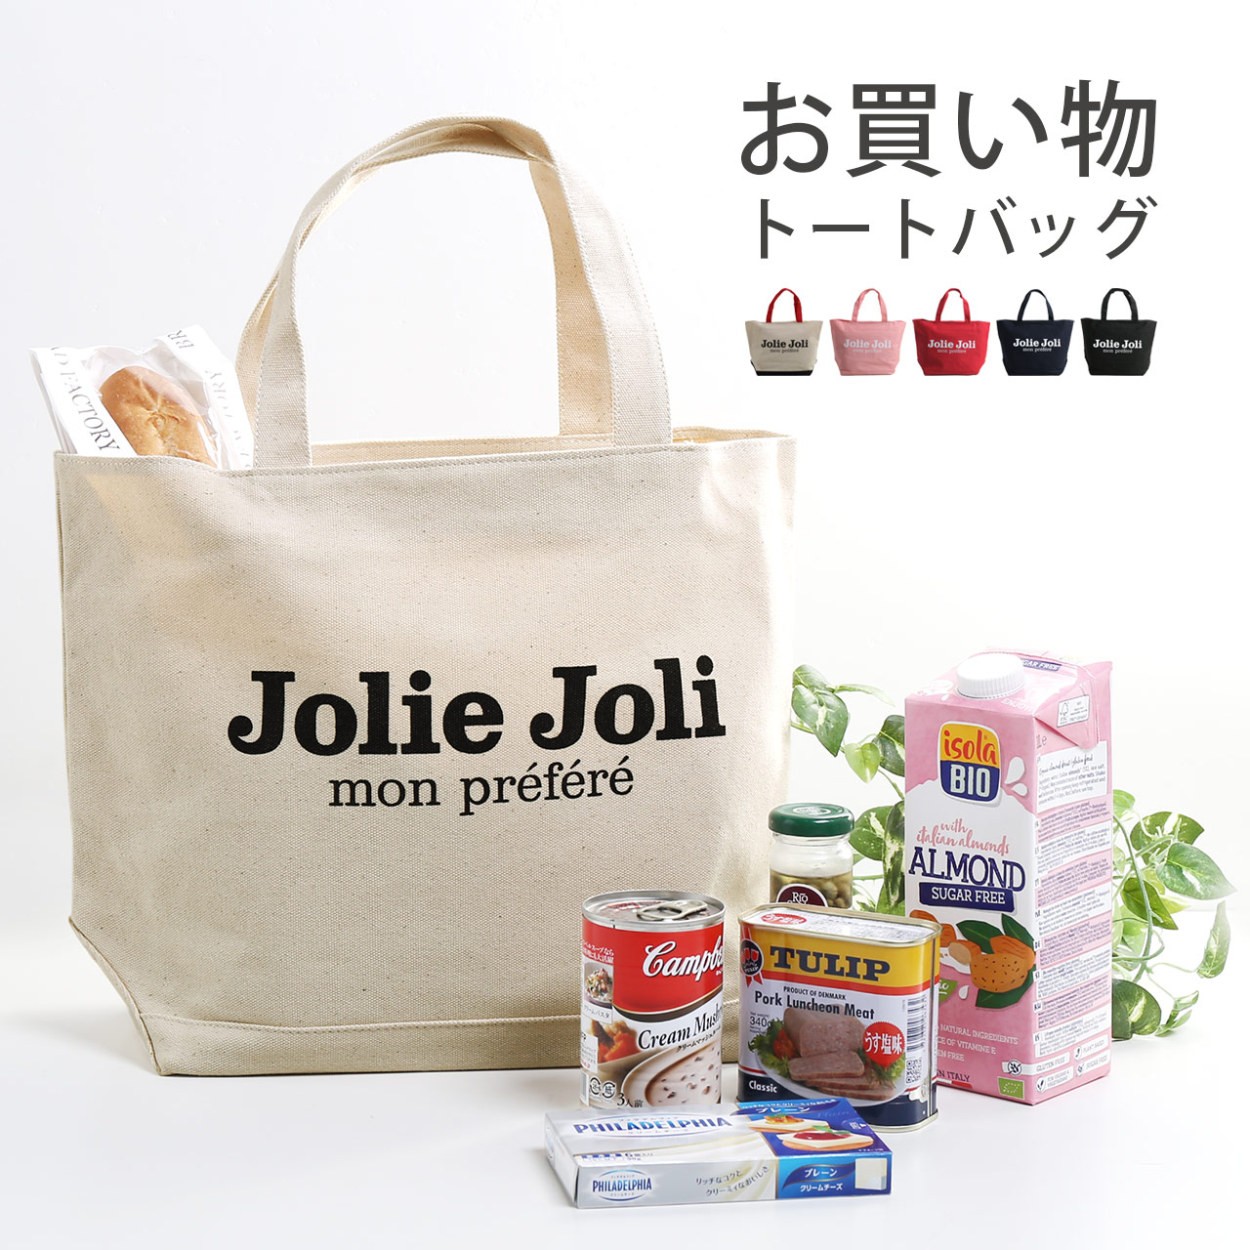 エコバッグ おしゃれ 大きめ マイバッグ ブランド Jolie Joli ショッピングトート 大容量 可愛い かわいい バッグ キャンバスバッグ Cc 1r Sankyo Shokai 三京商会 通販 Paypayモール